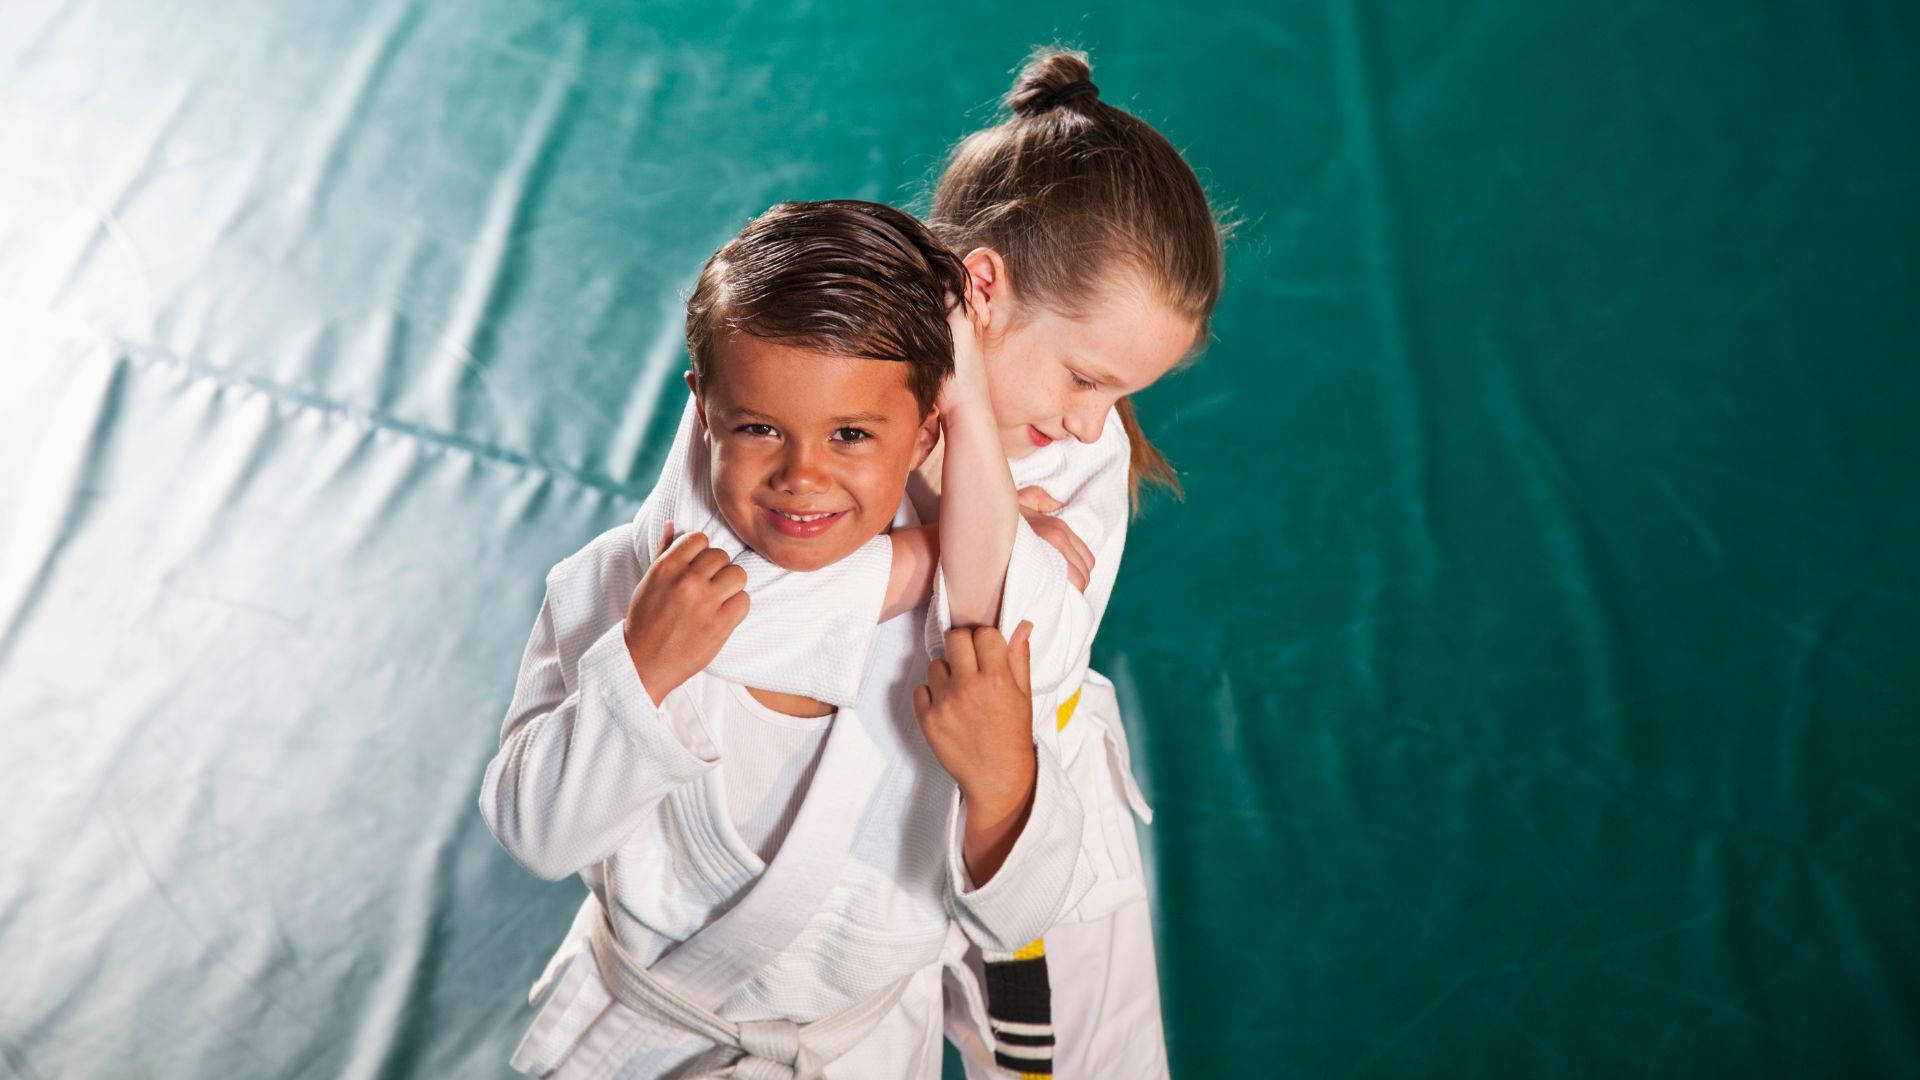 Brazilian Jiu-jitsu Martial Arts Kids Sports Wallpaper